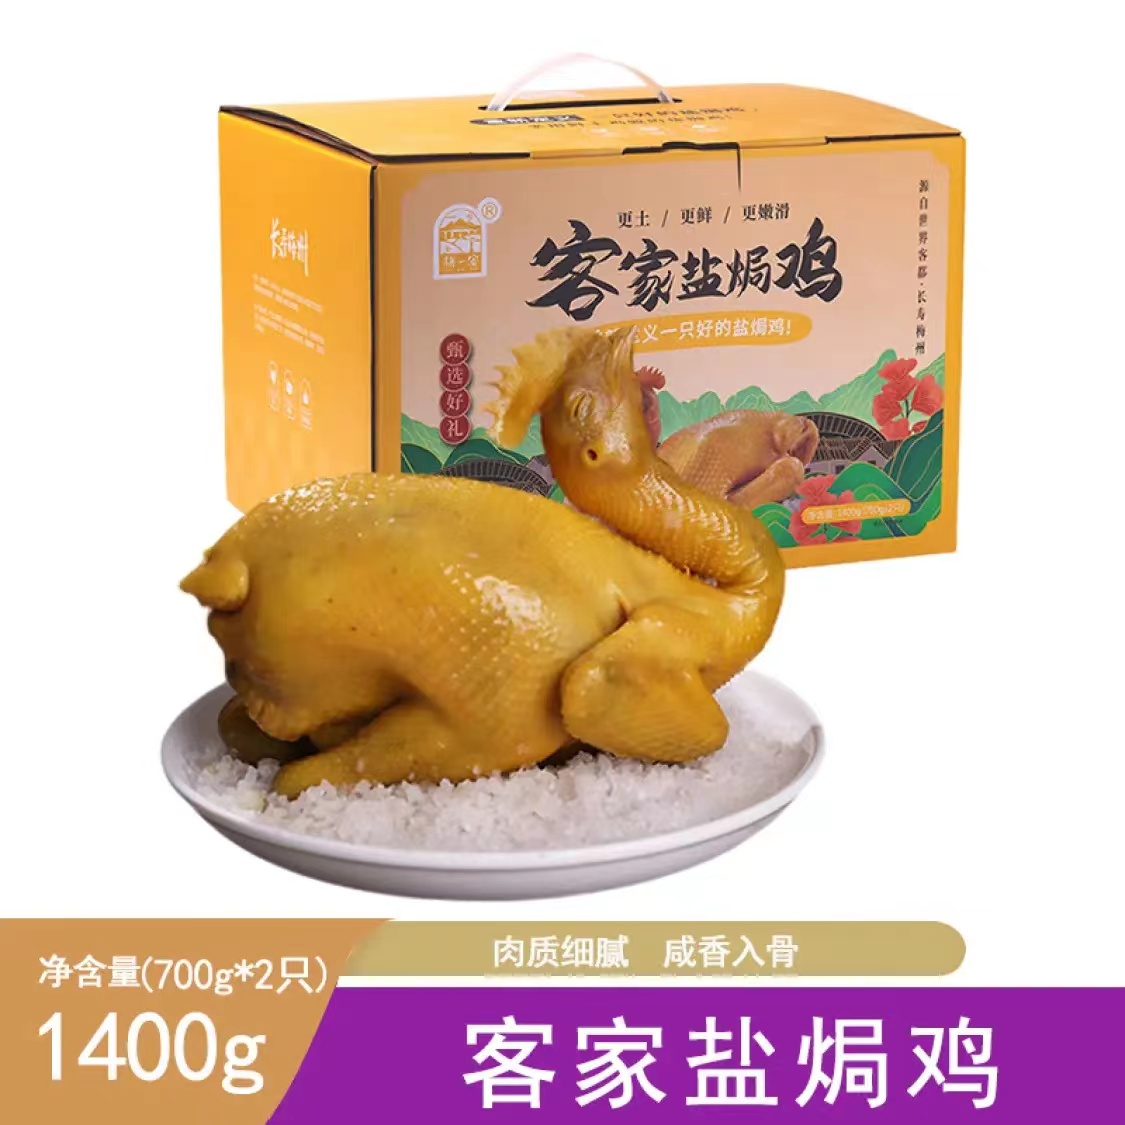 【梅州帮扶】【预制菜】梅一客梅州客家特产盐焗鸡整只700g